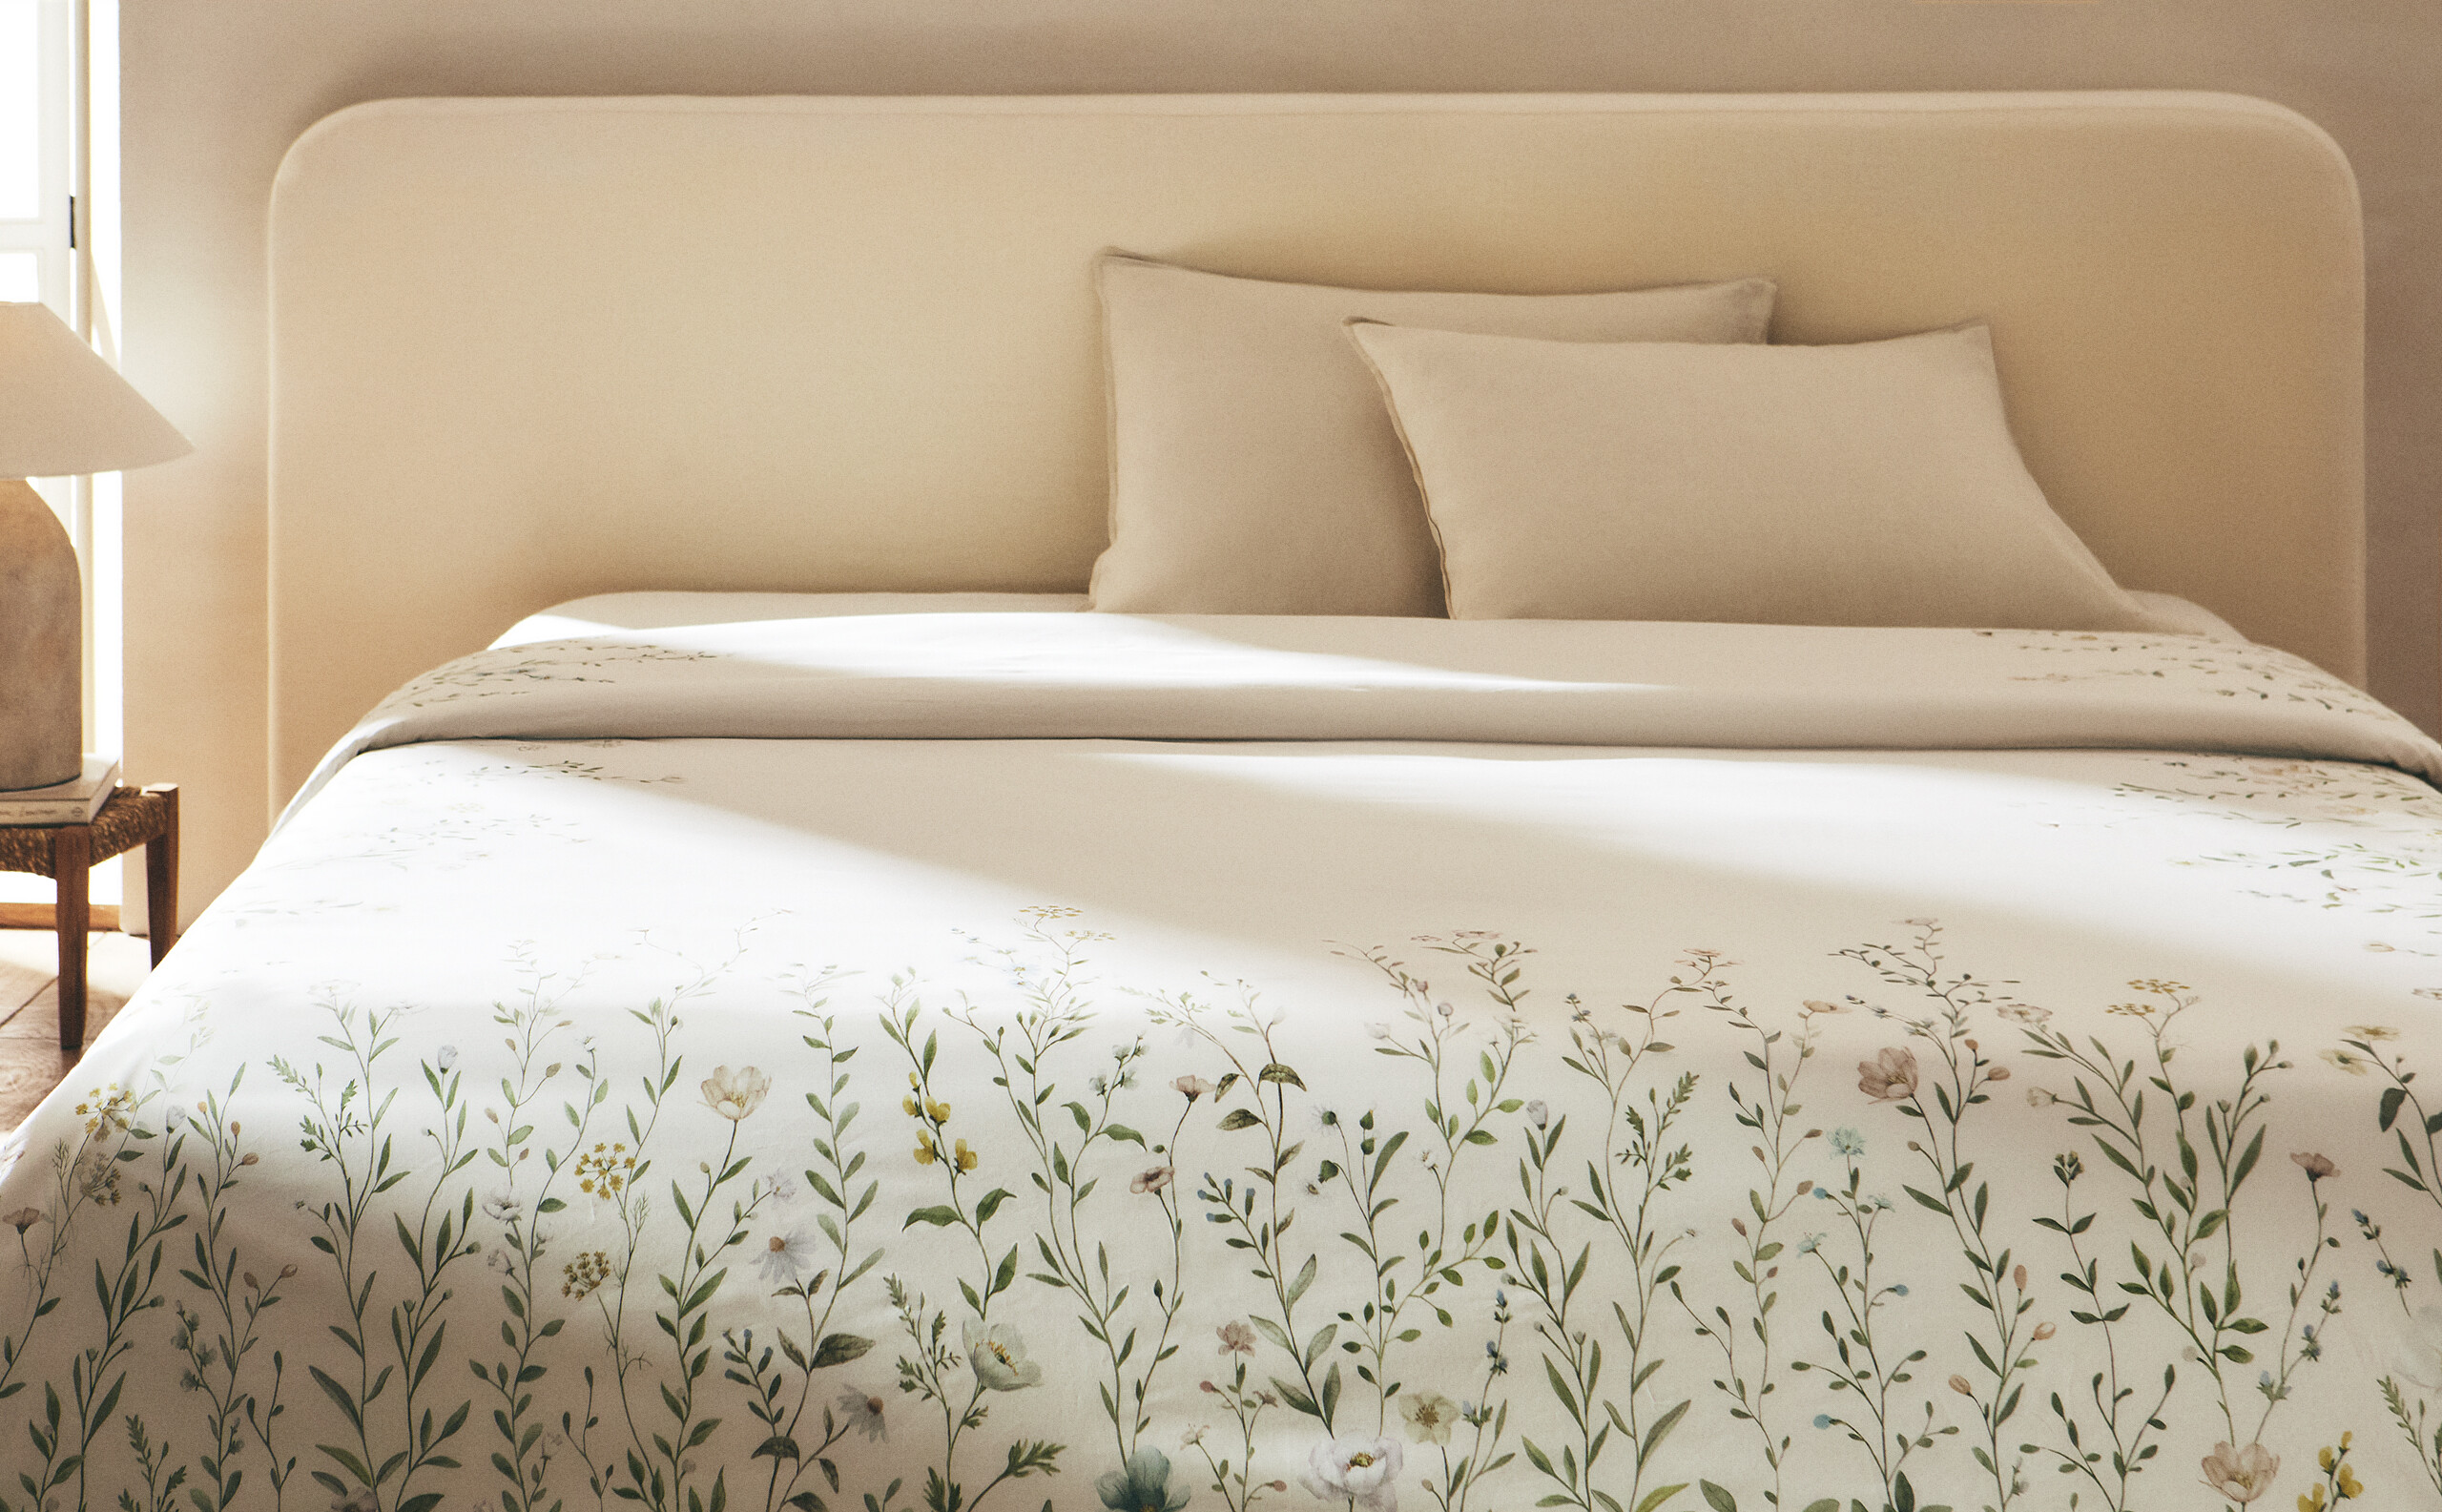 3 fundas nórdicas de Zara Home bonitas y cálidas que abrigarán tu cama y  darán un toque otoñal a tu dormitorio